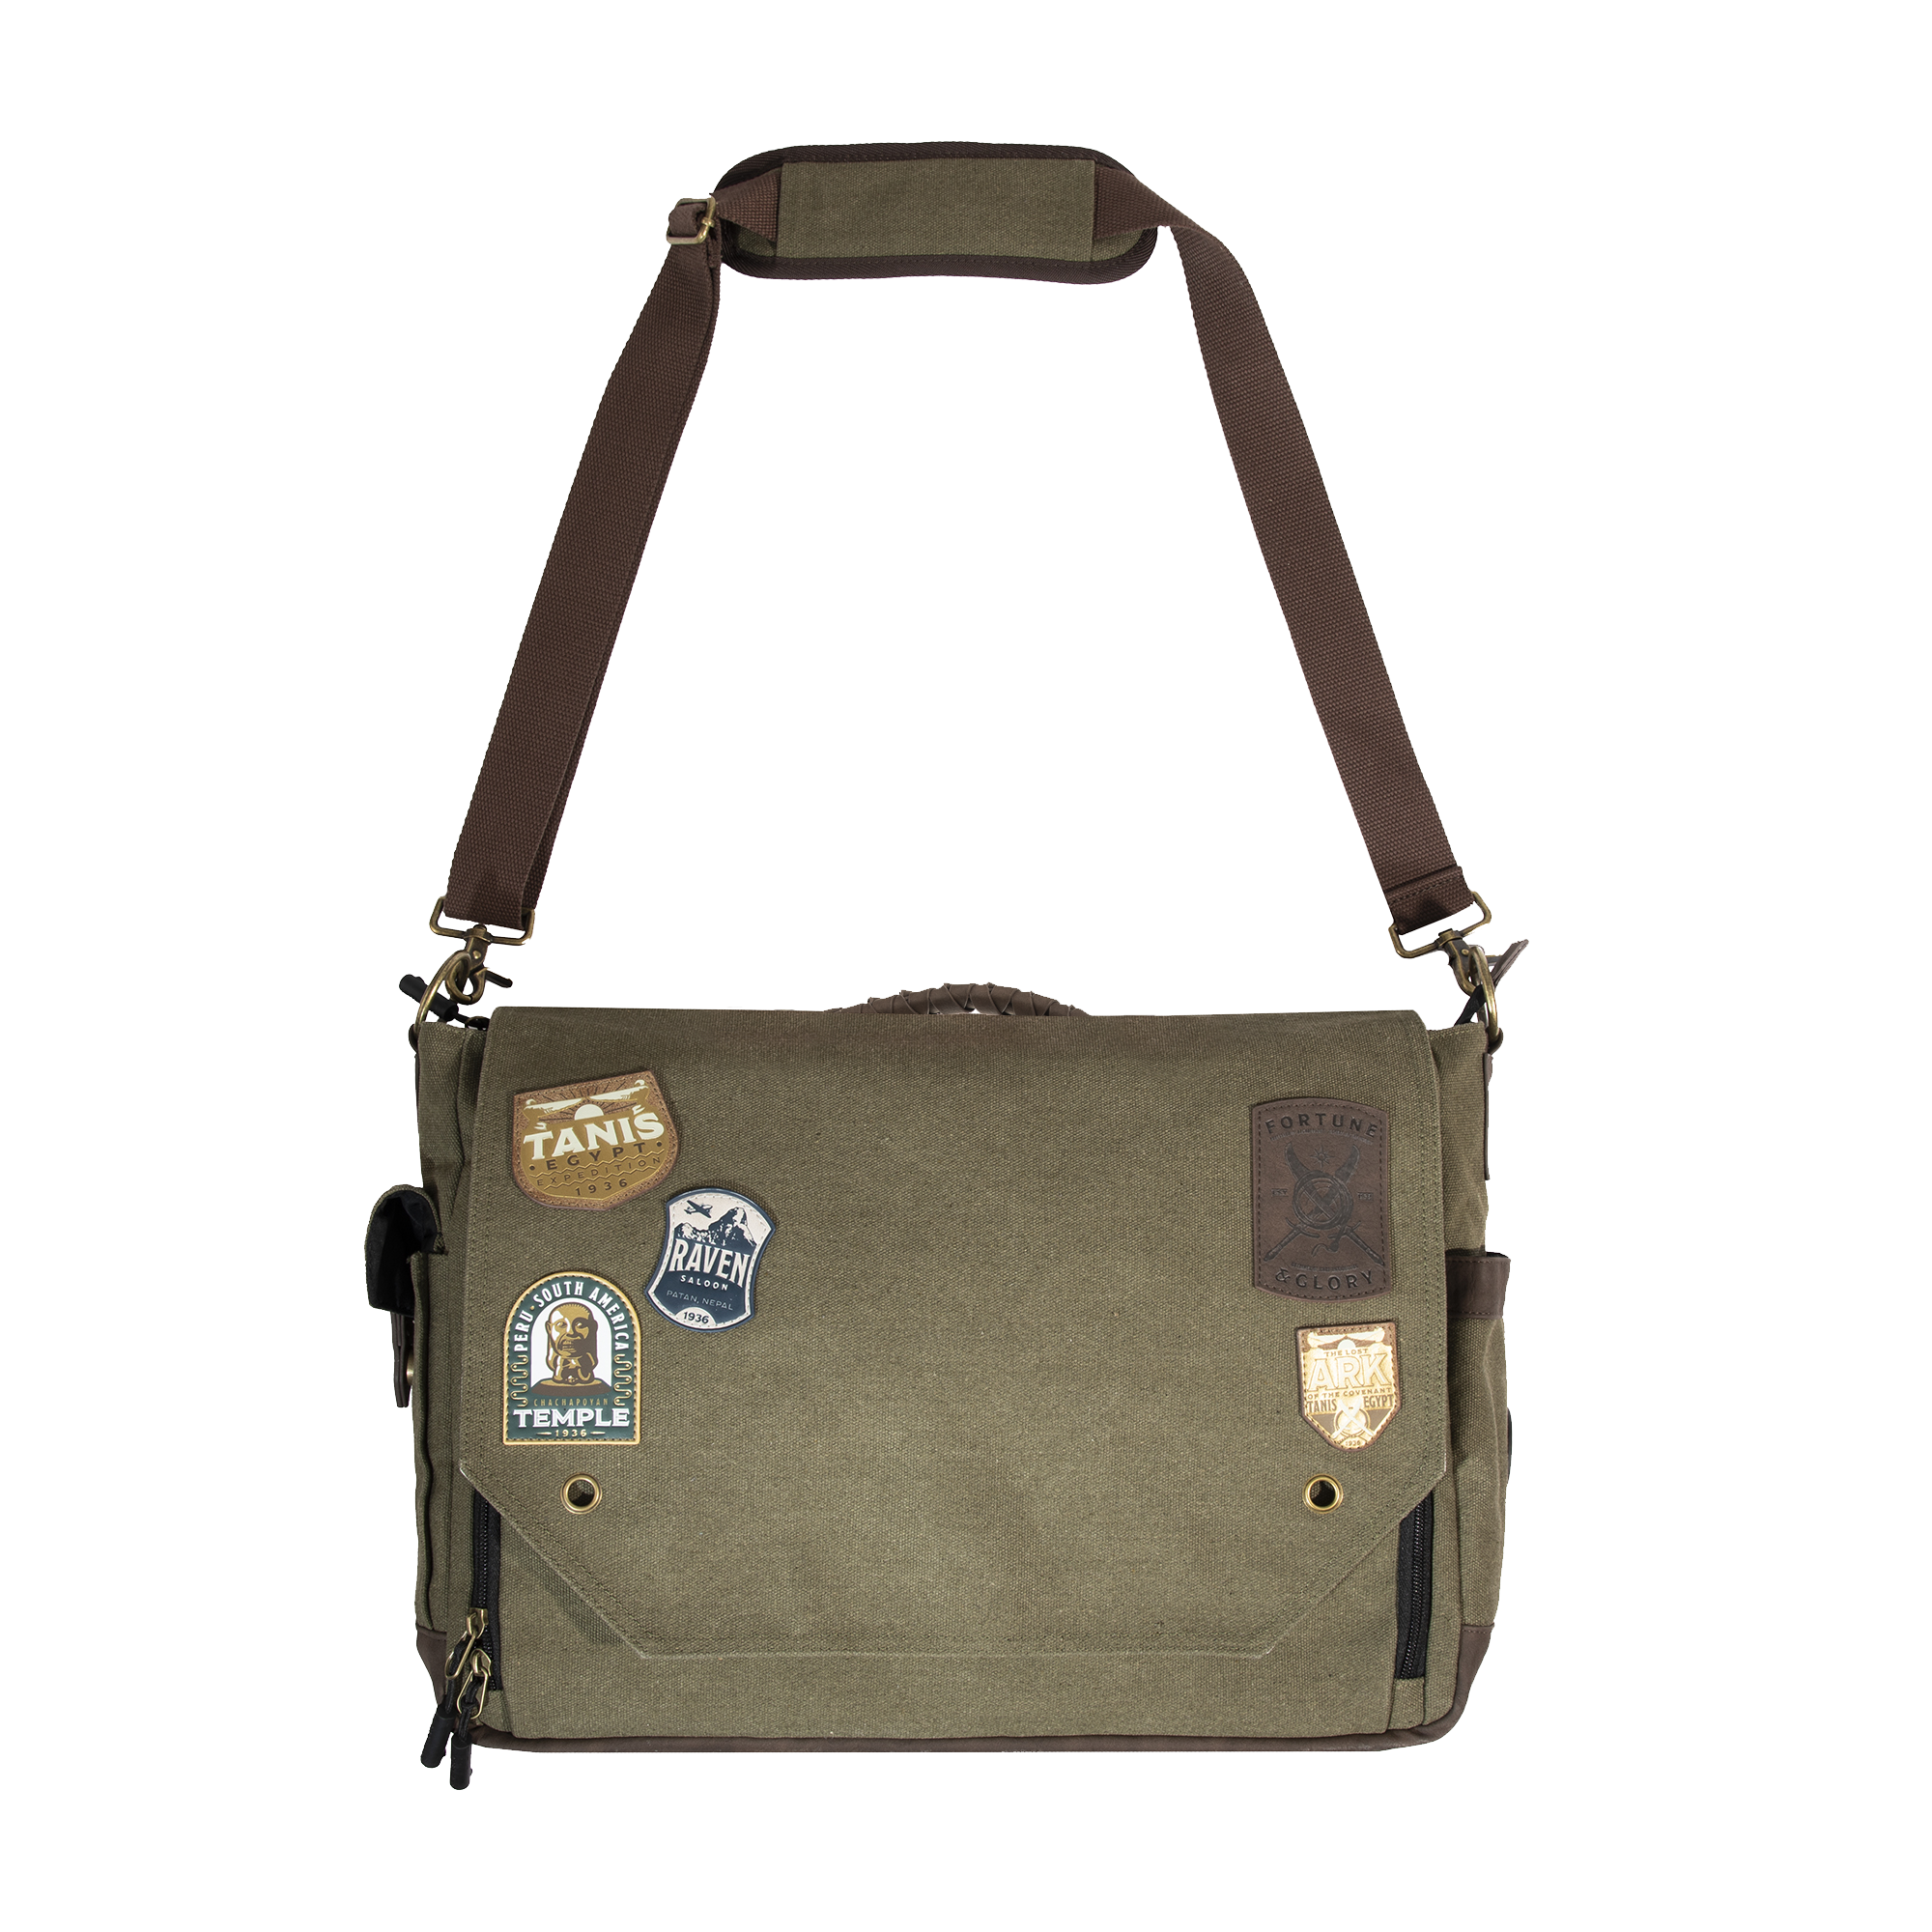 Messenger bag & shoulder bag: discover our selection